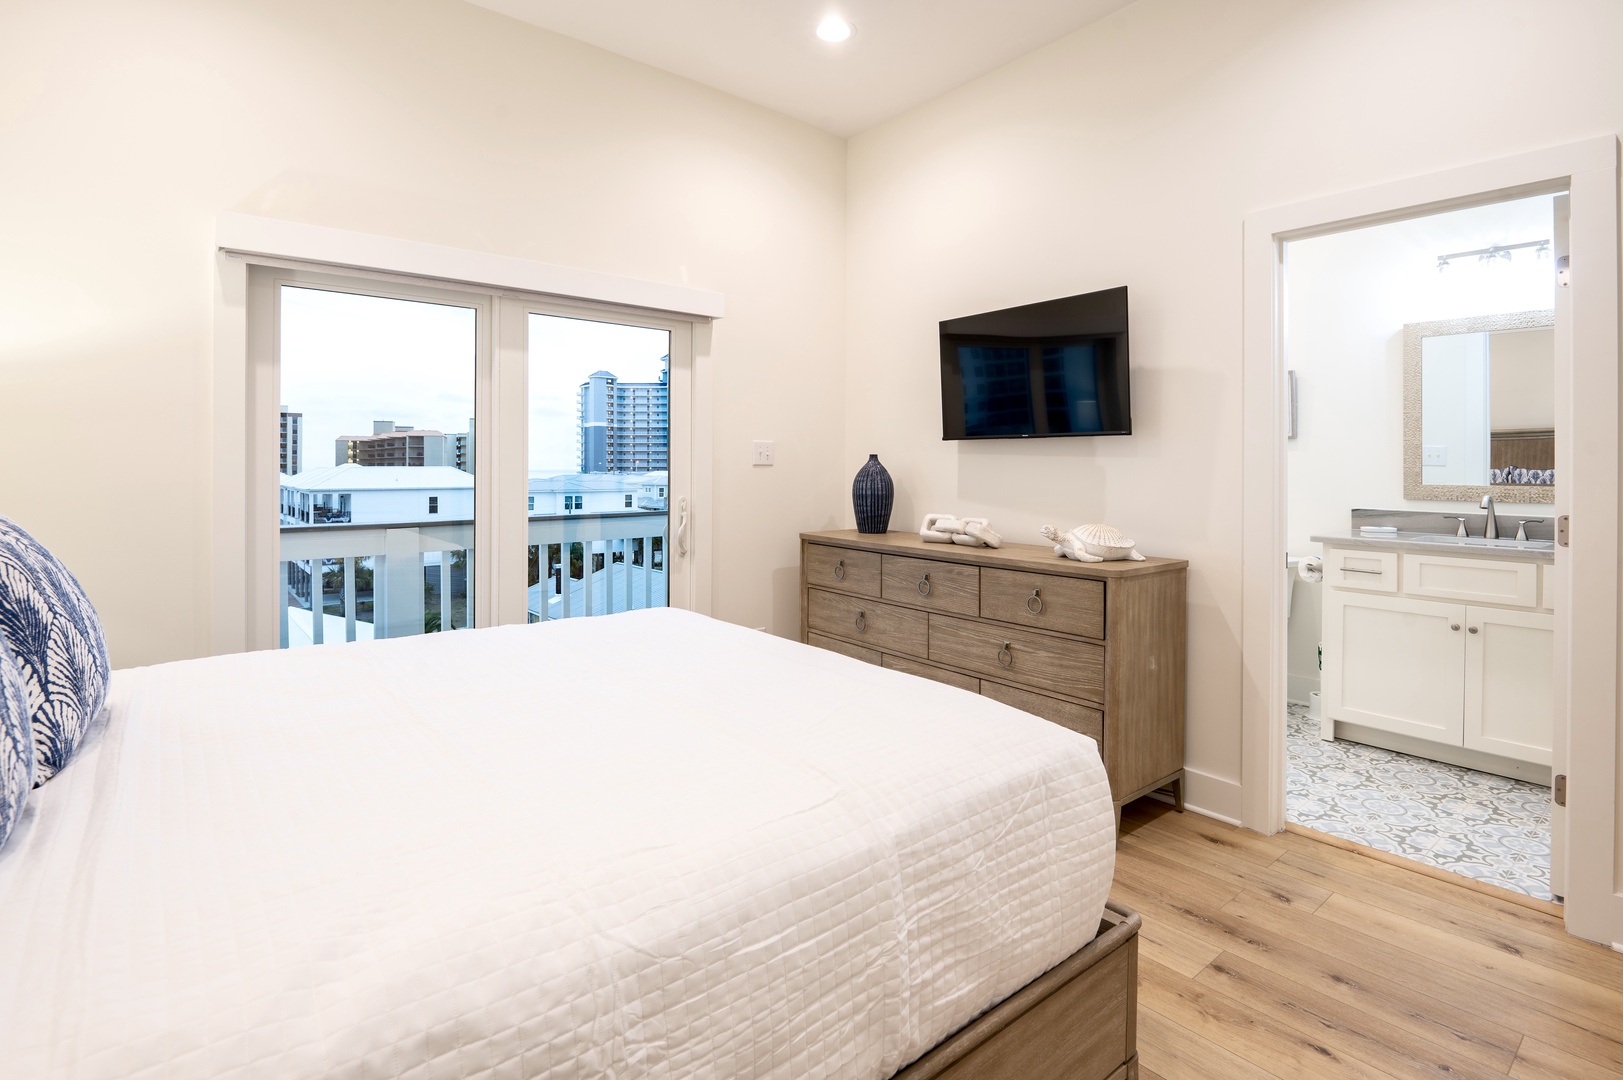 4th floor - Bedroom 7 with Queen bed, Smart TV, balcony, and en-suite